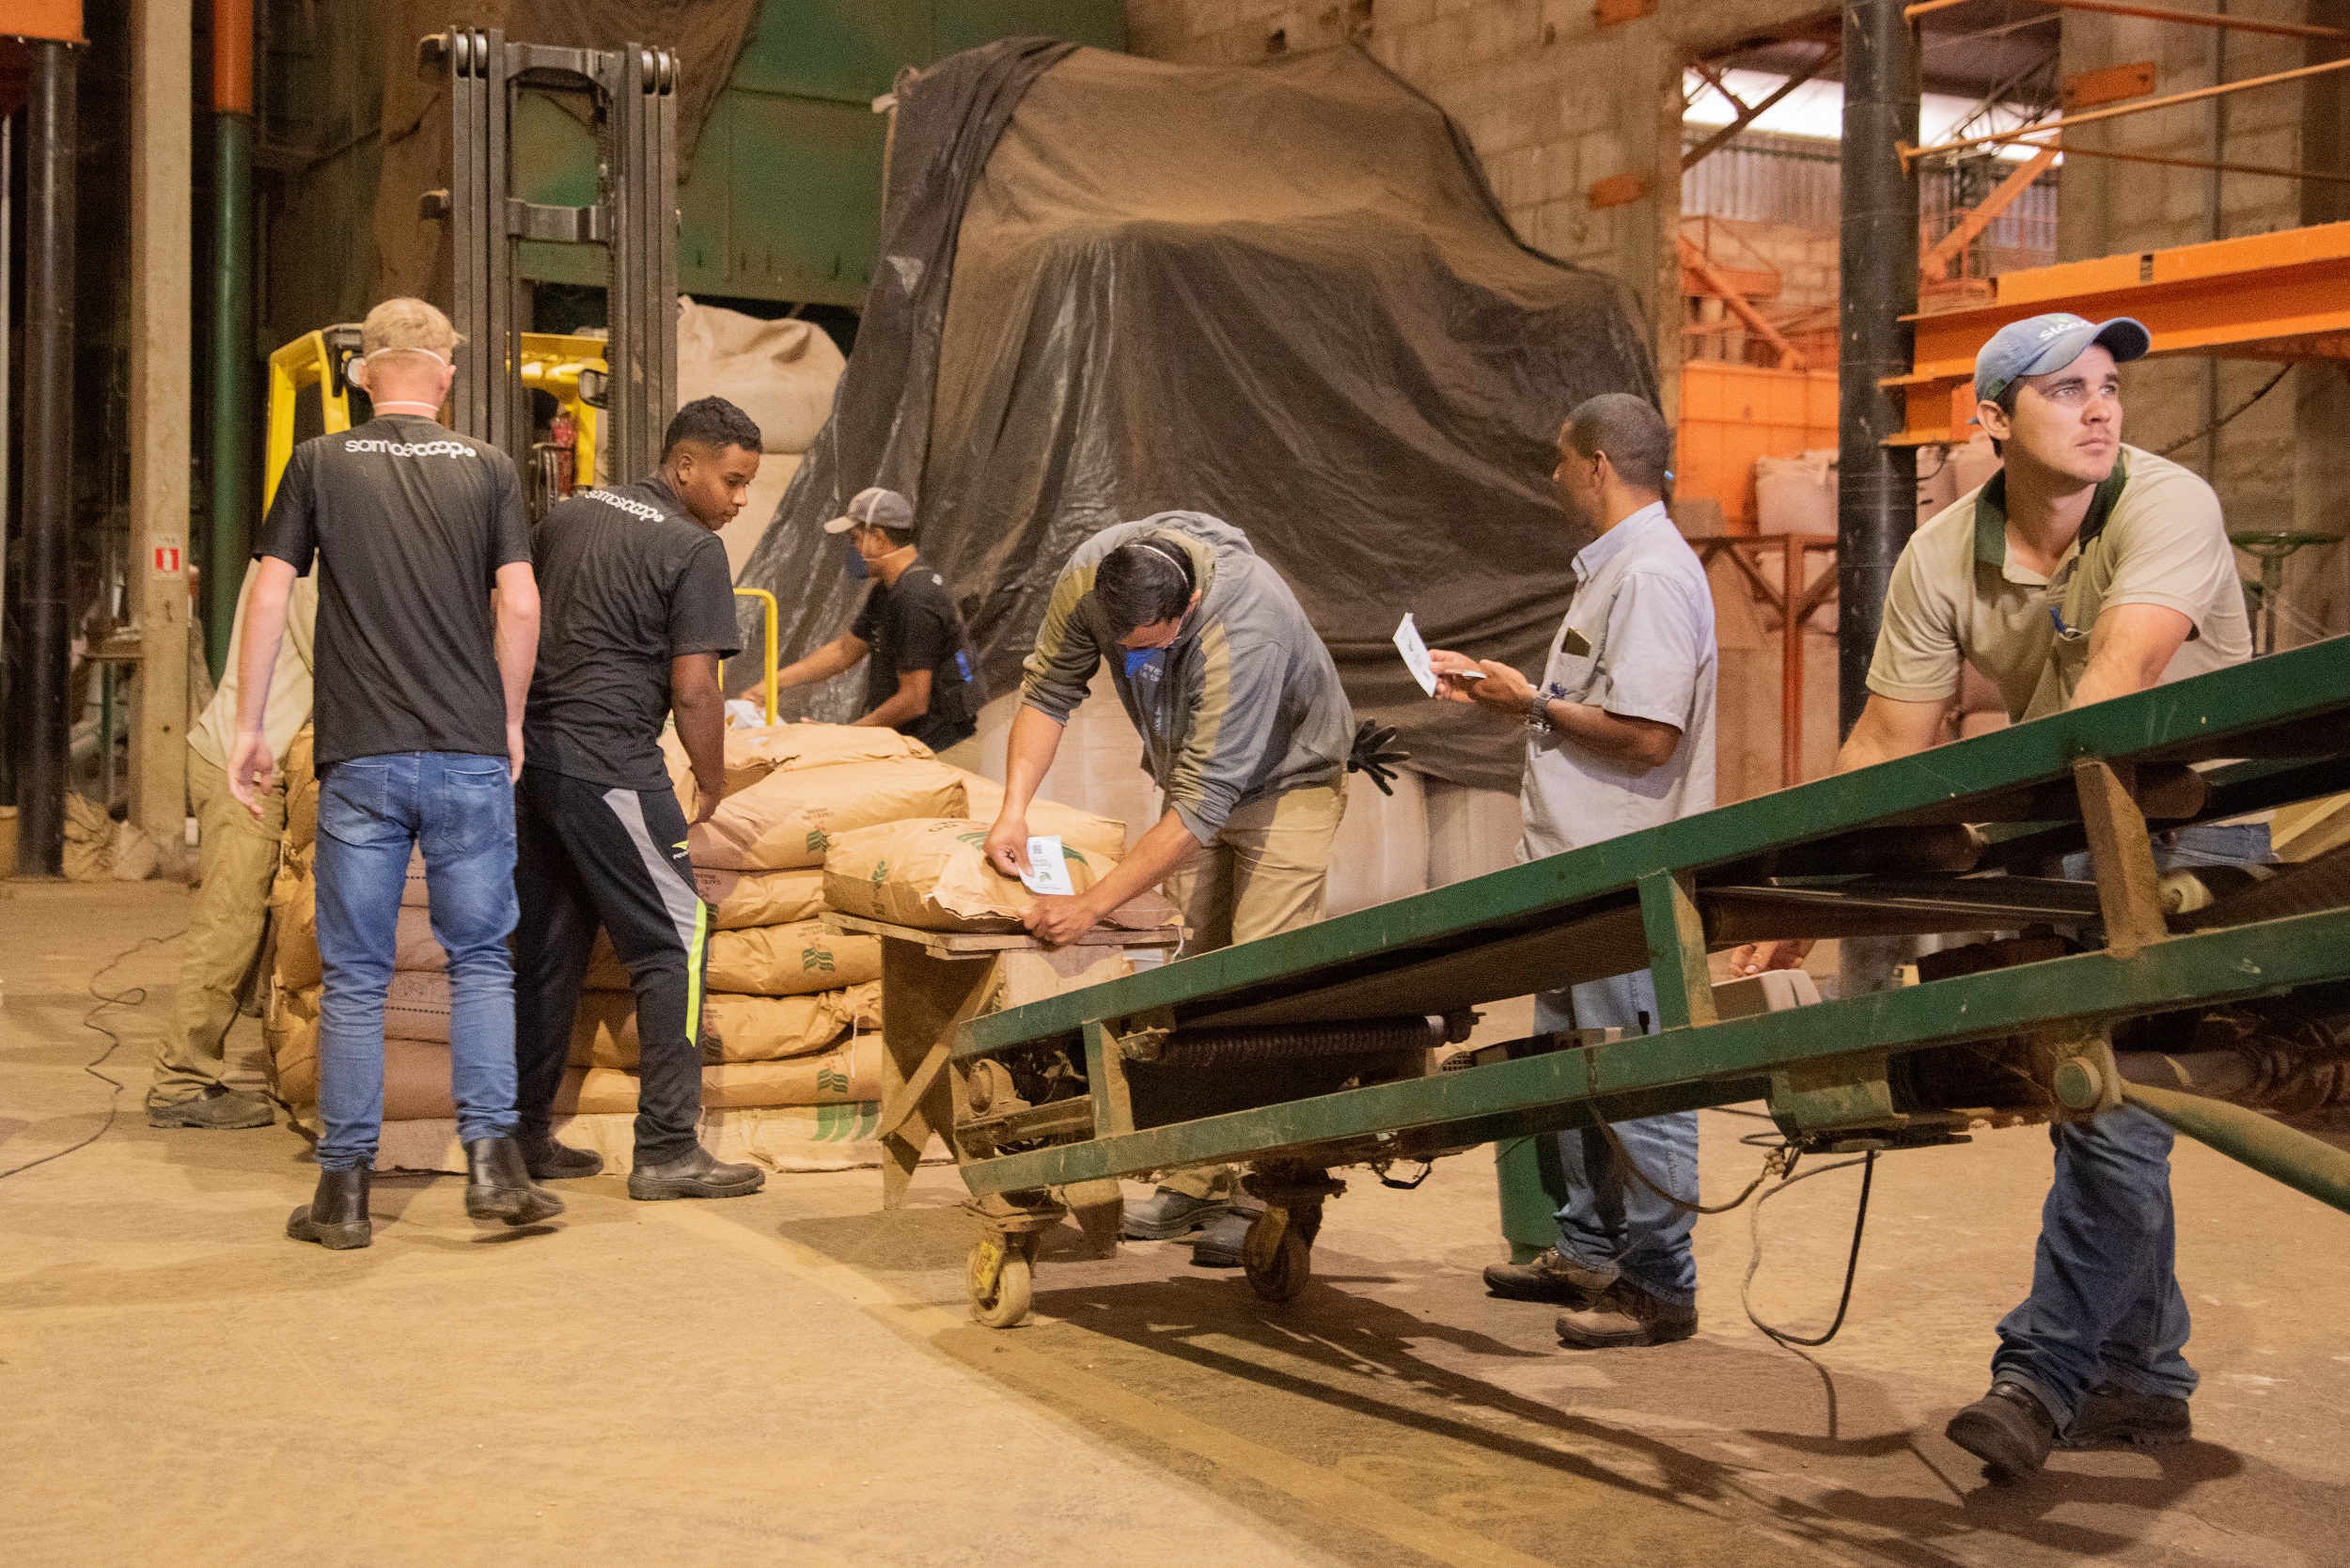 Produtor de café conilon do Brasil tenta recuperar mercado